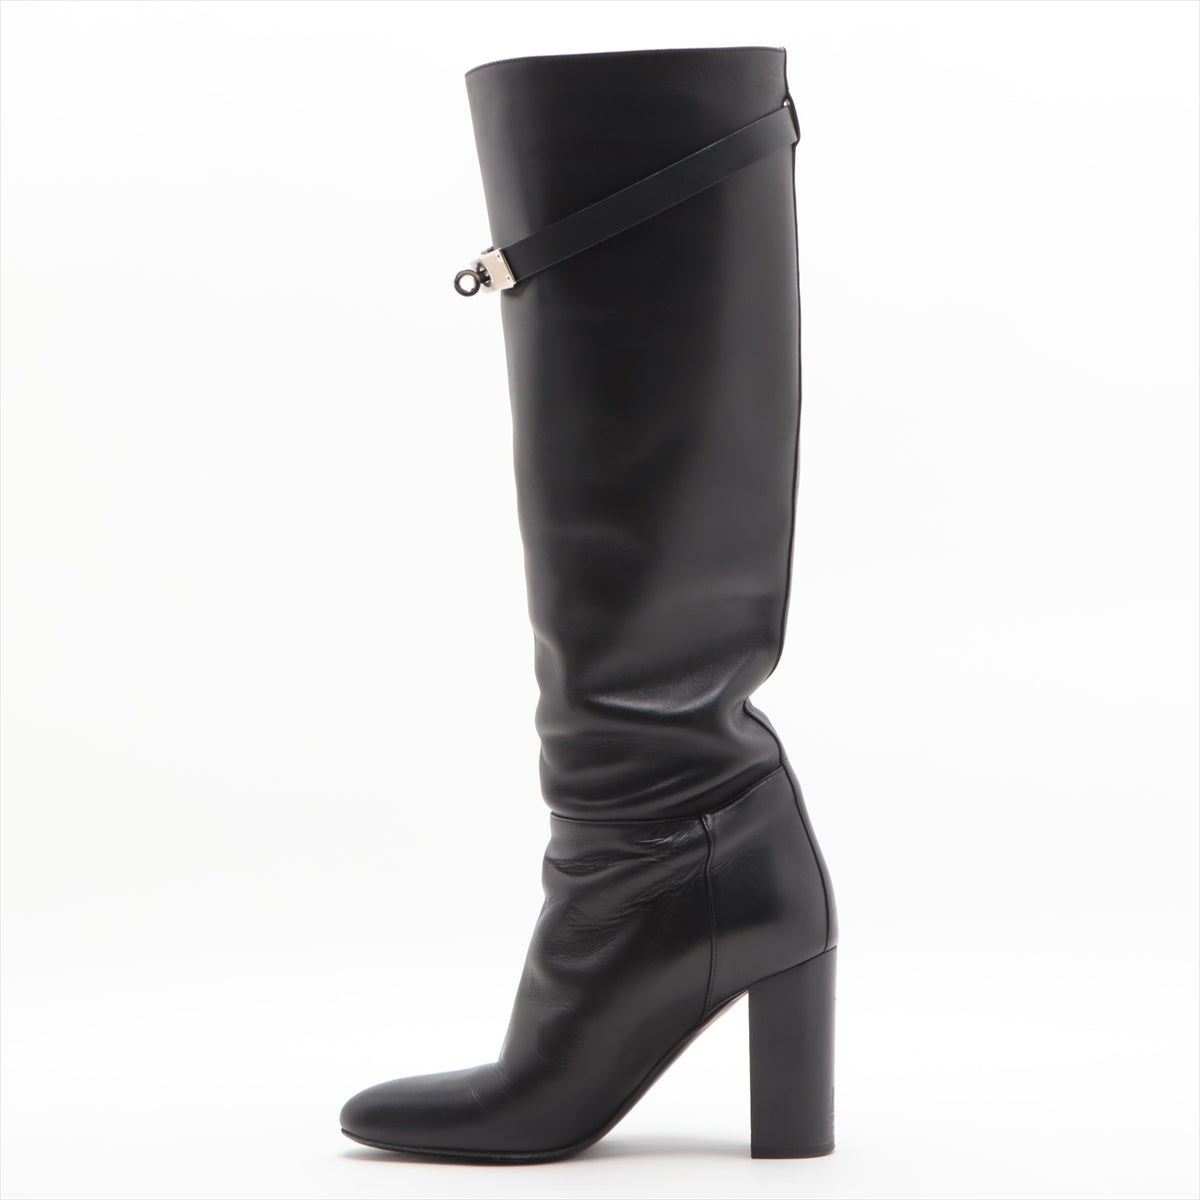 Hermès Leather Long boots 35 1/2 Ladies' Black Kelly metal fittings